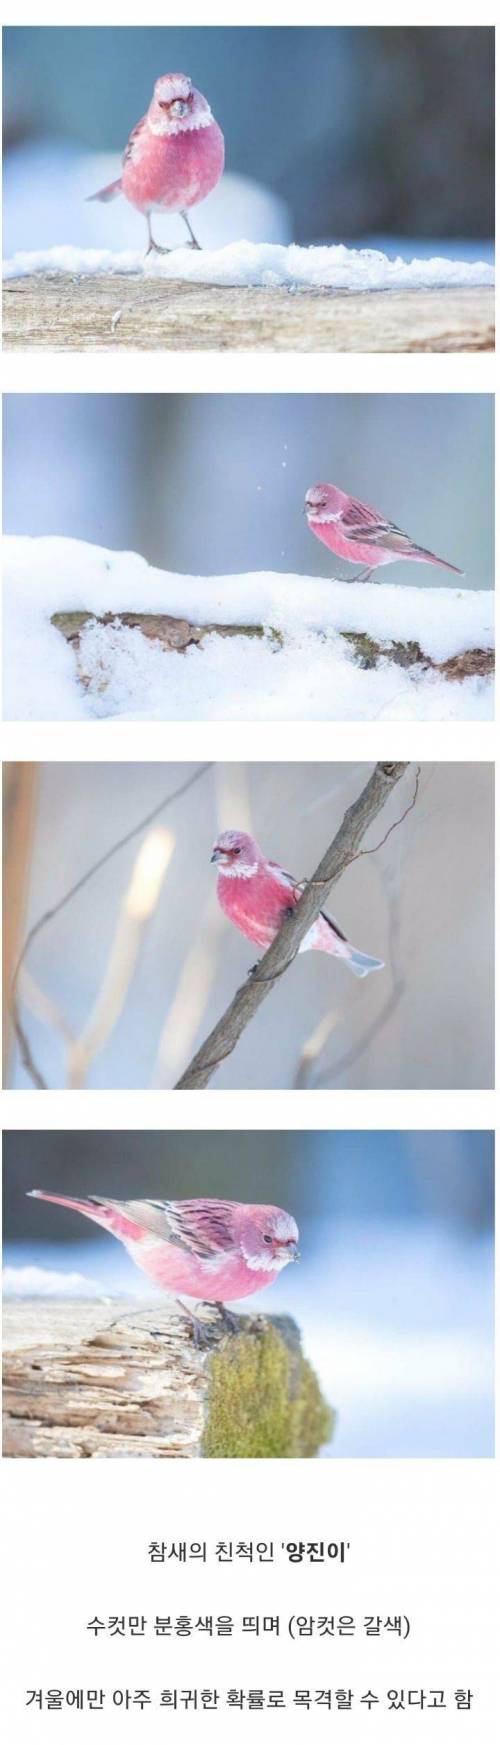 한국에서 볼 수 있는 가장 아름다운 새 .jpg